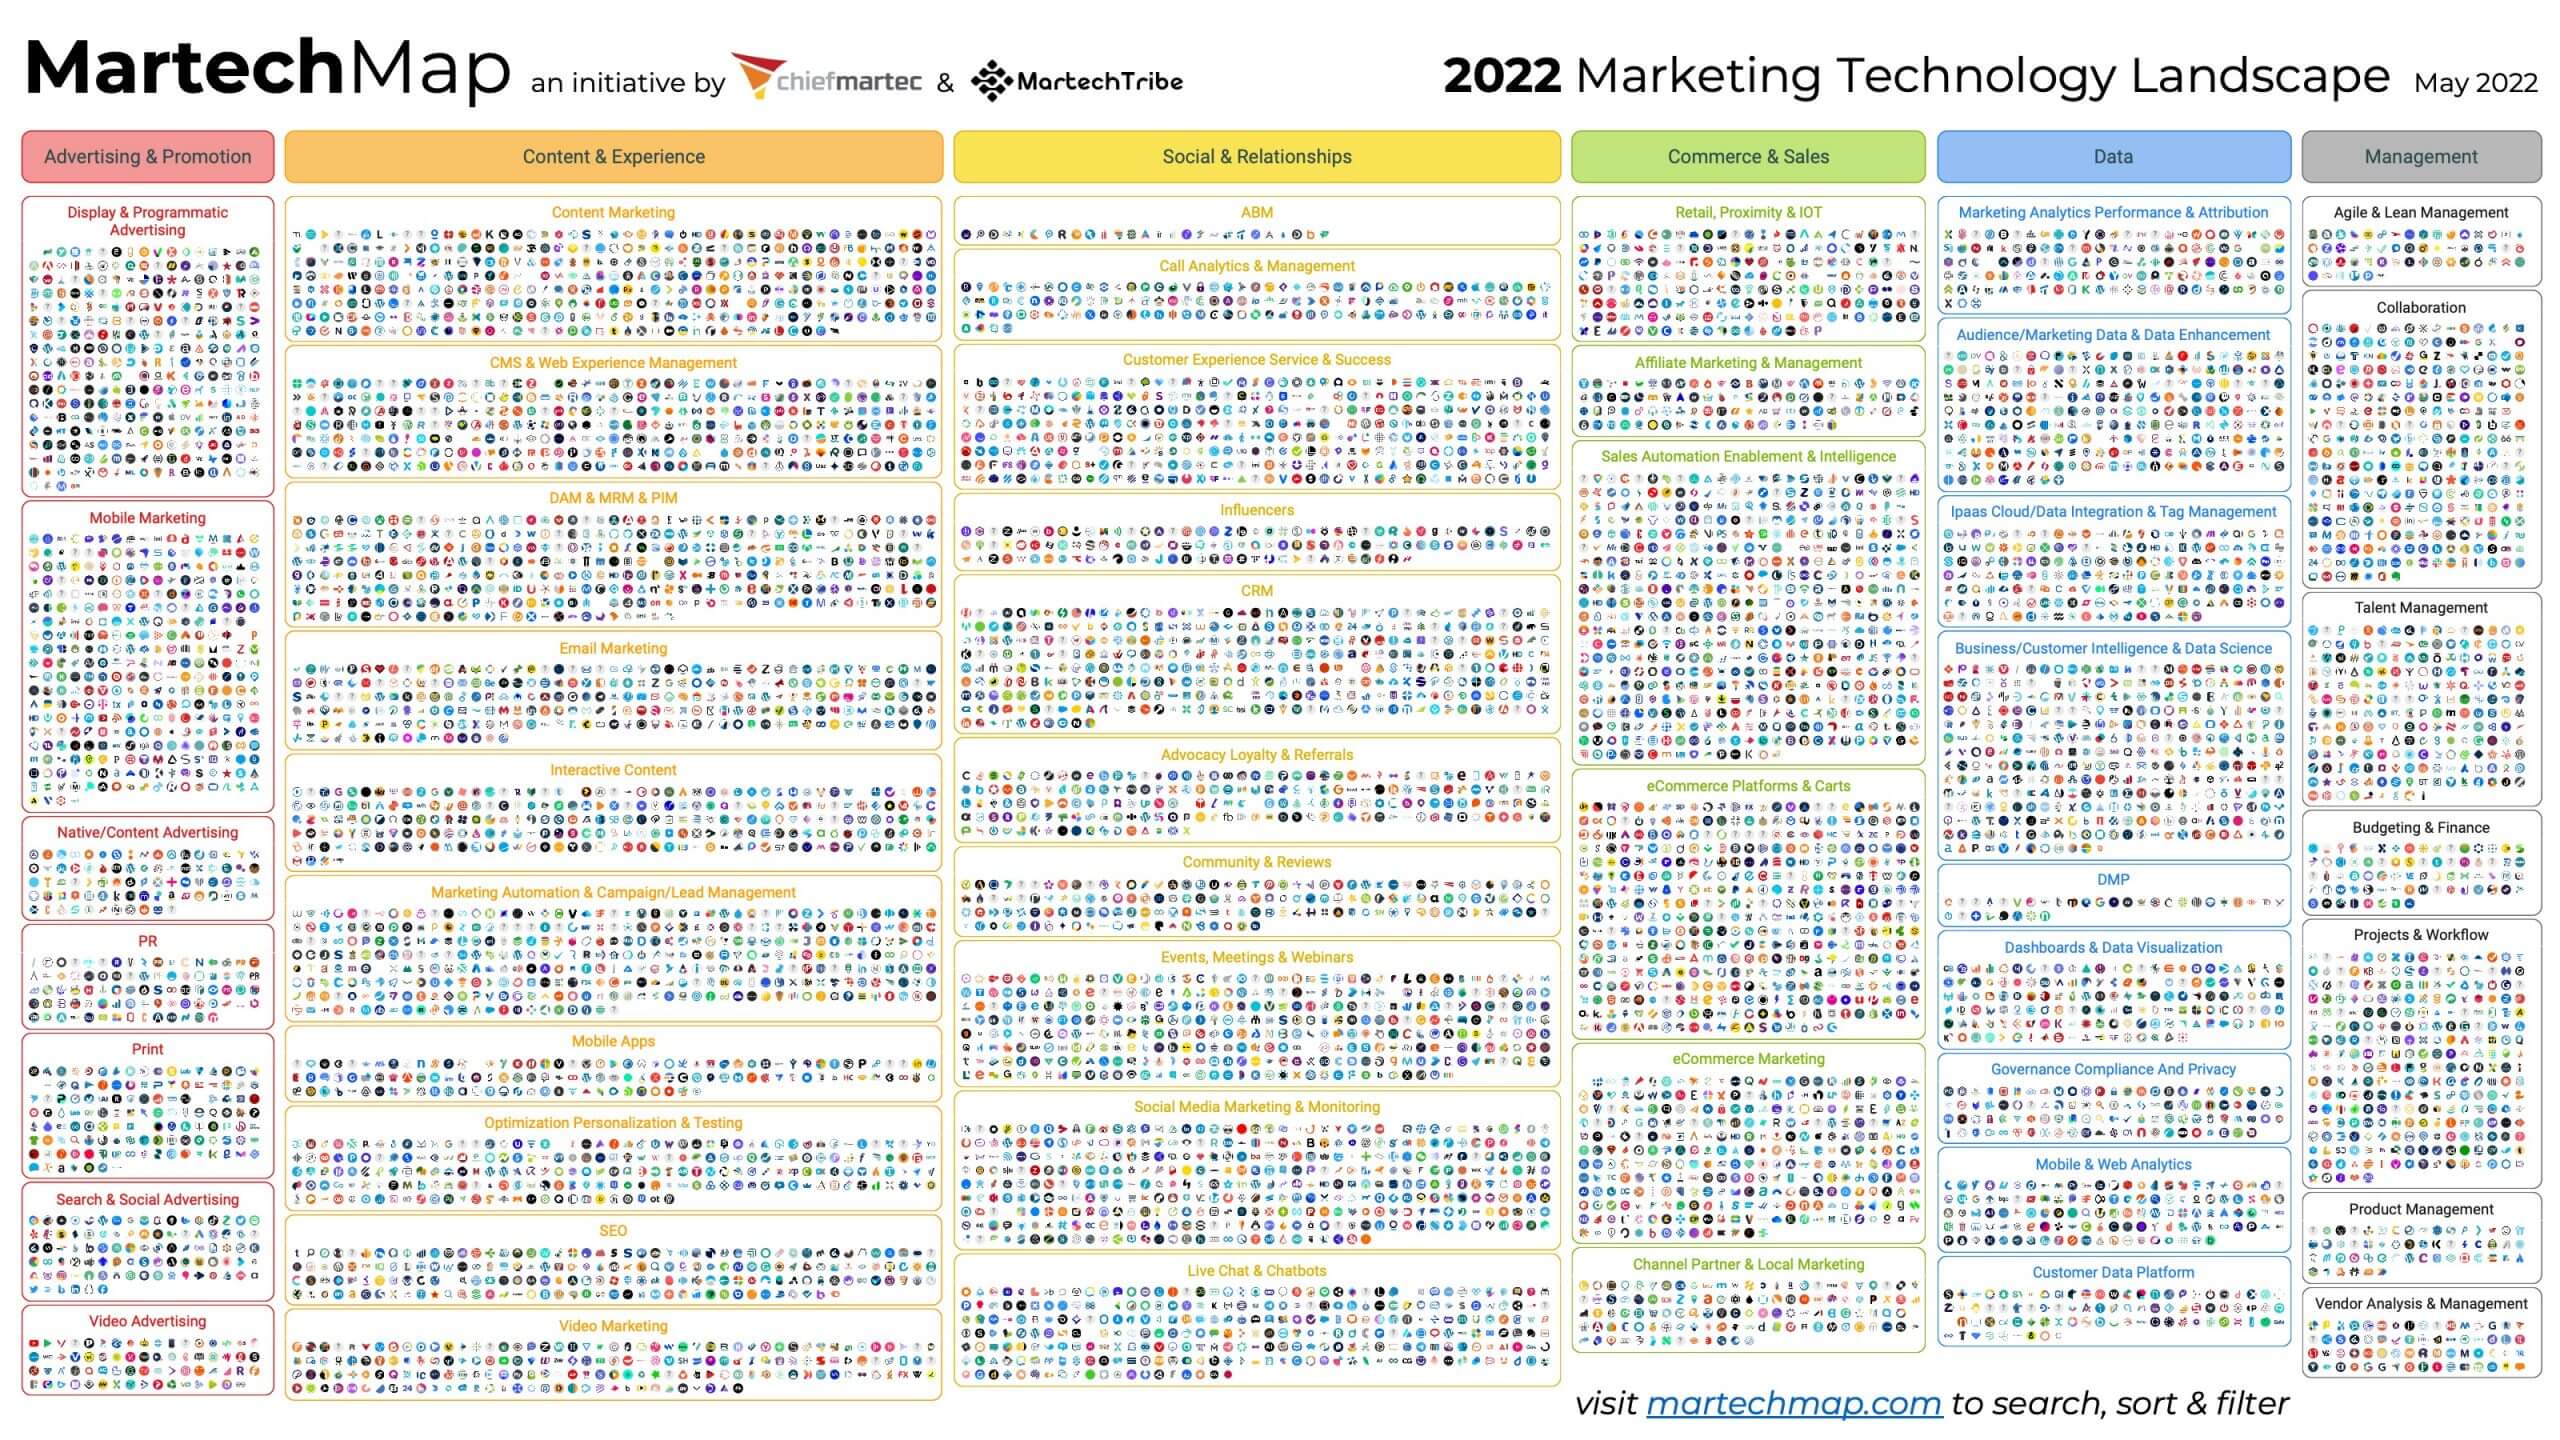 Marketing Technology Landscape 2022